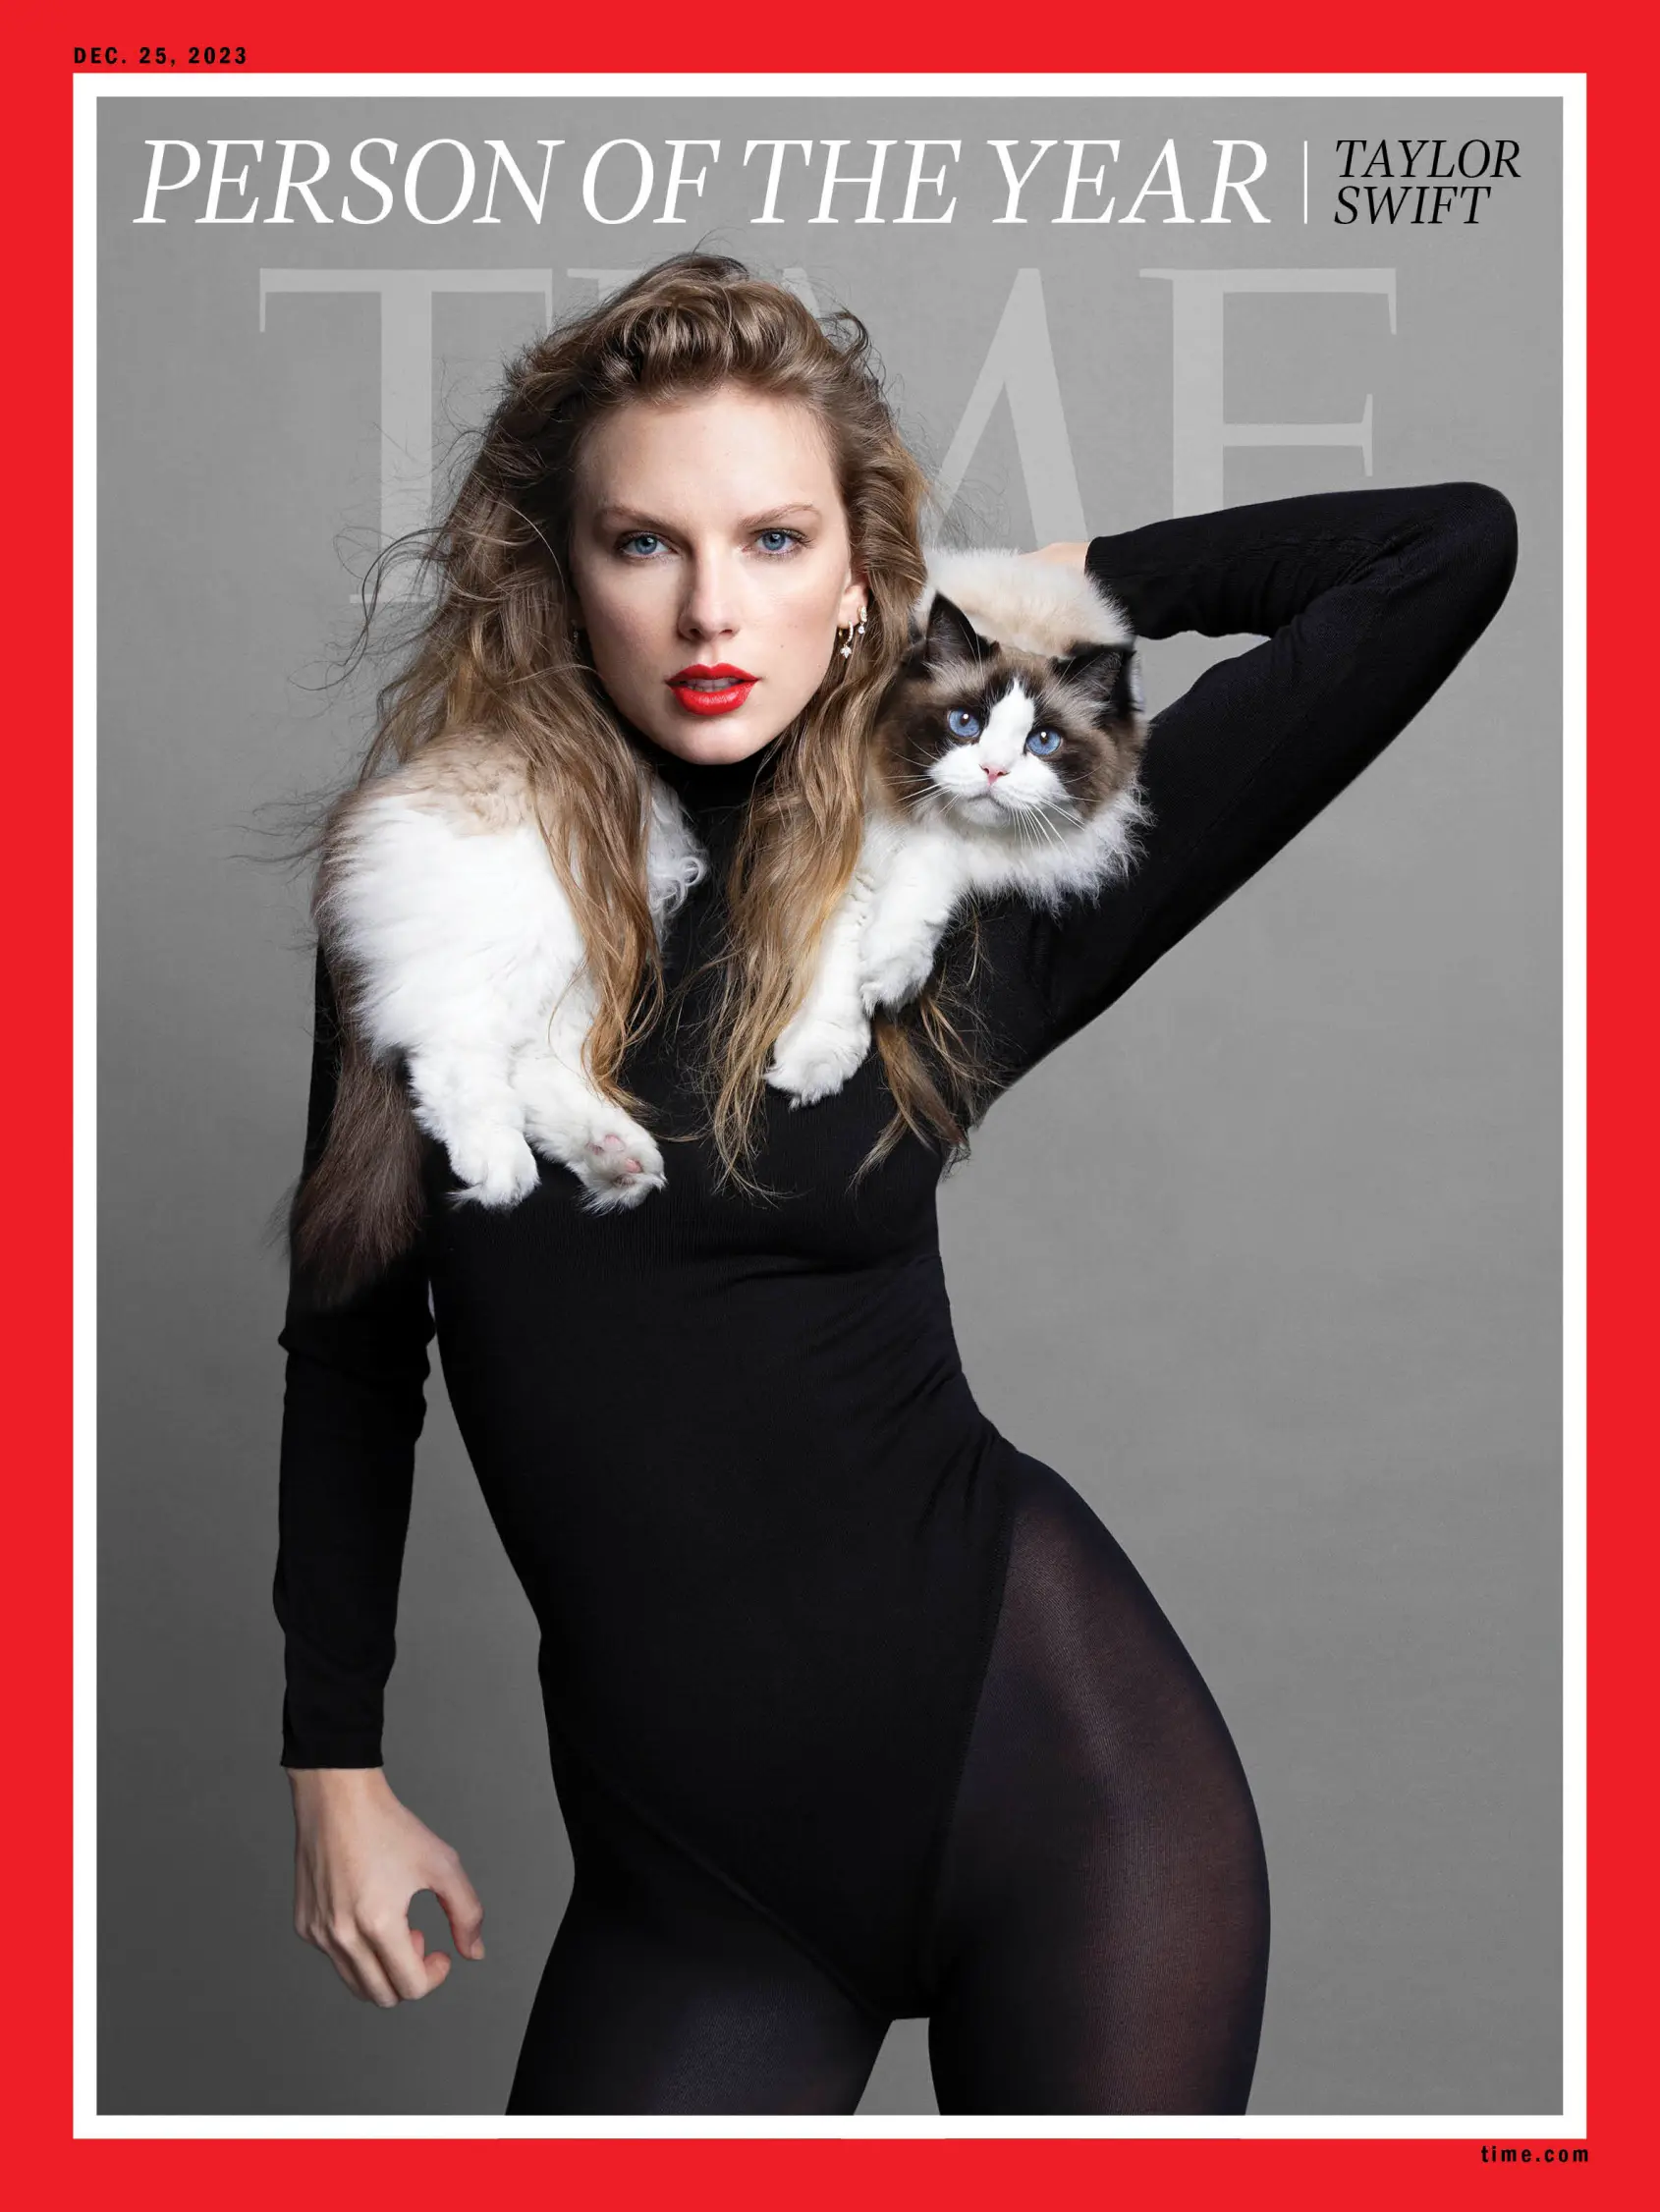 Taylor Swift - Persona del Año revista Time